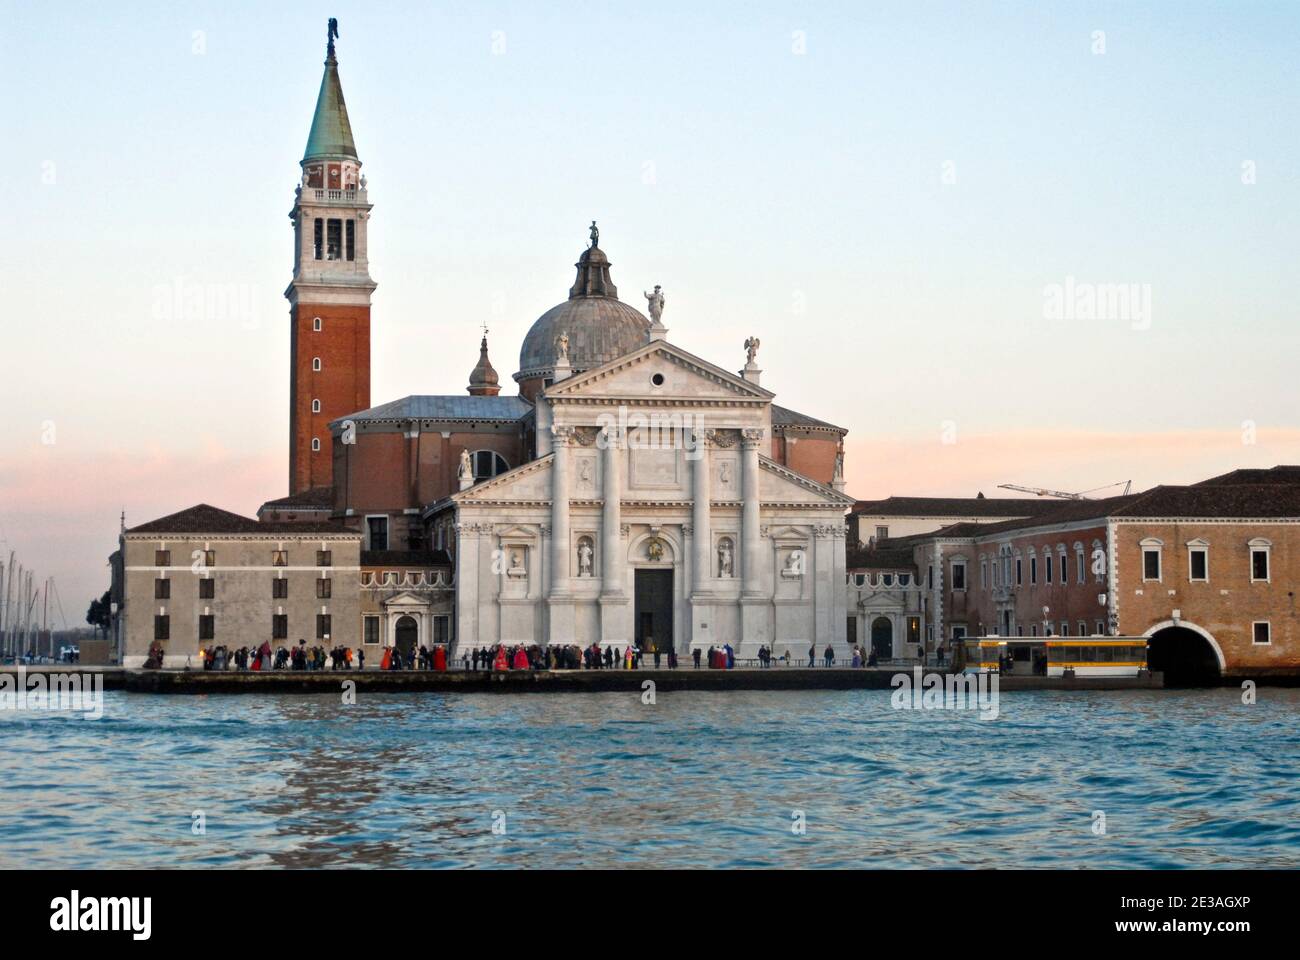 San Giorgio Maggiore island, Venice, Italy Stock Photo